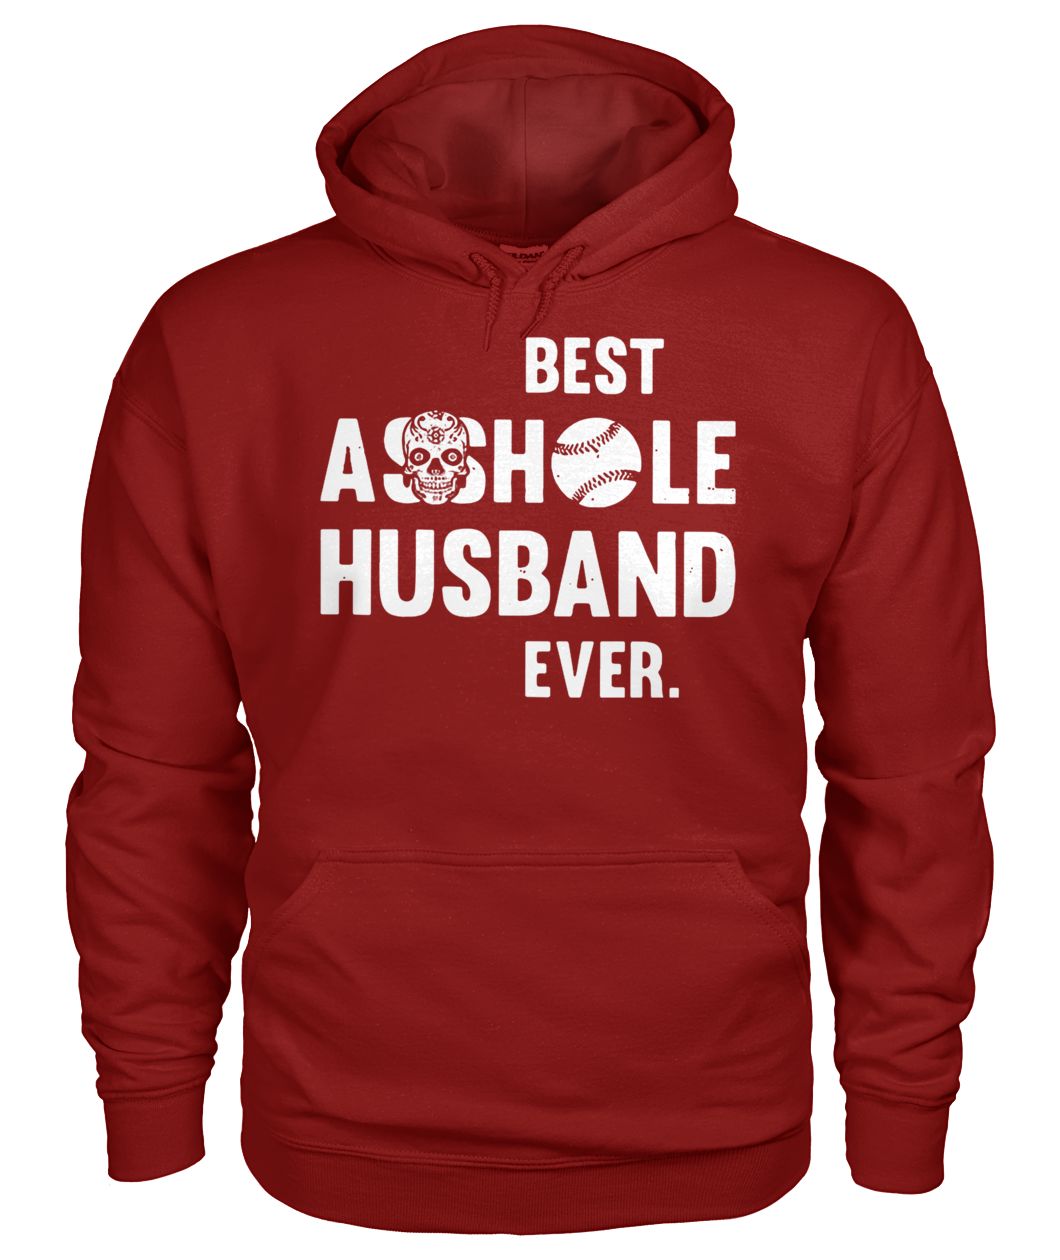 Softball best asshole husband ever gildan hoodie